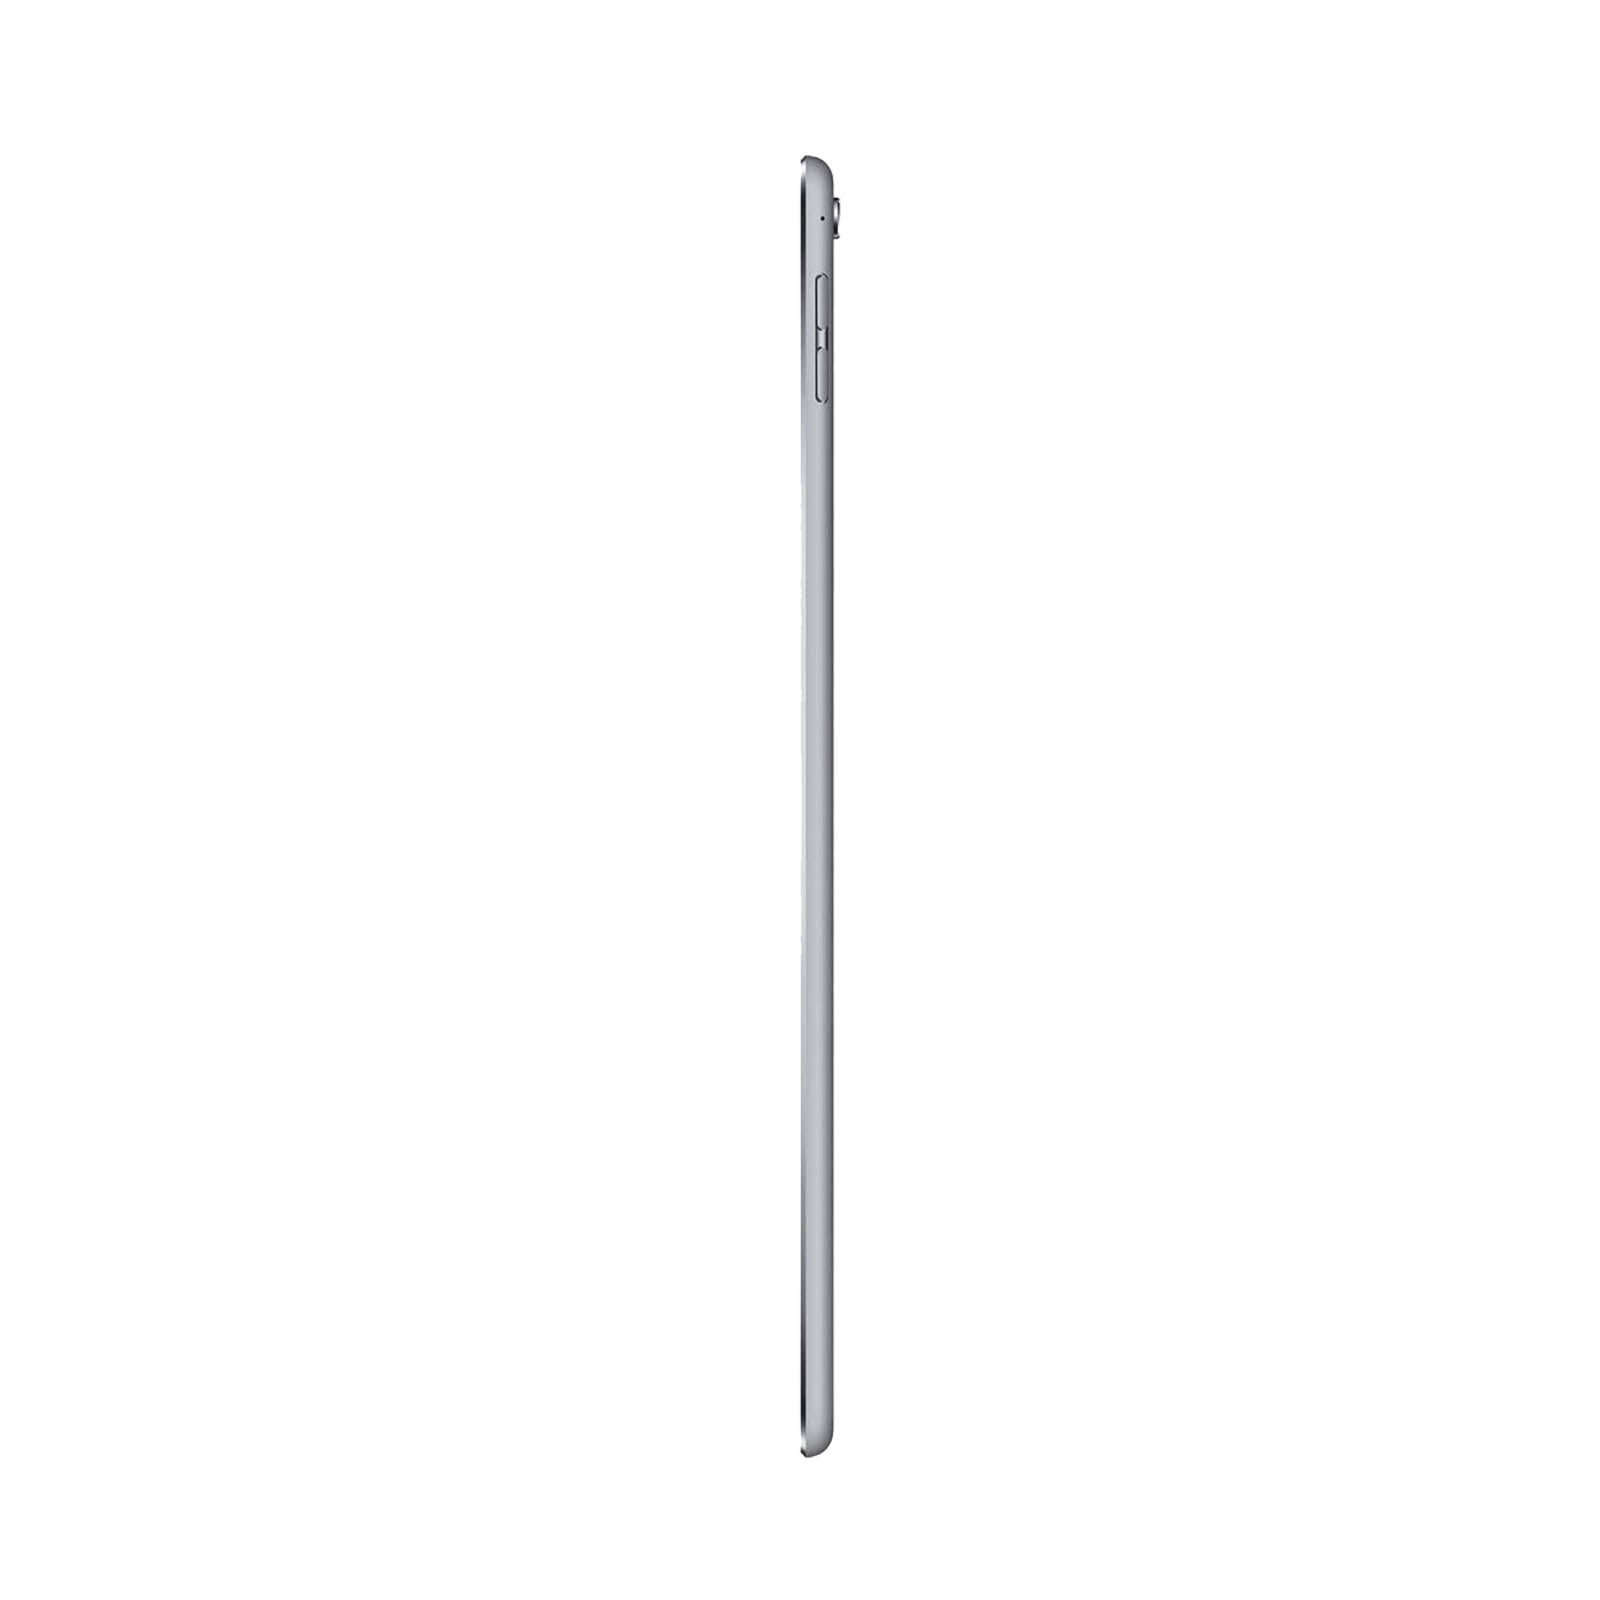 iPad Pro 9.7" 32GB Grigio Siderale Molto Buono WiFi